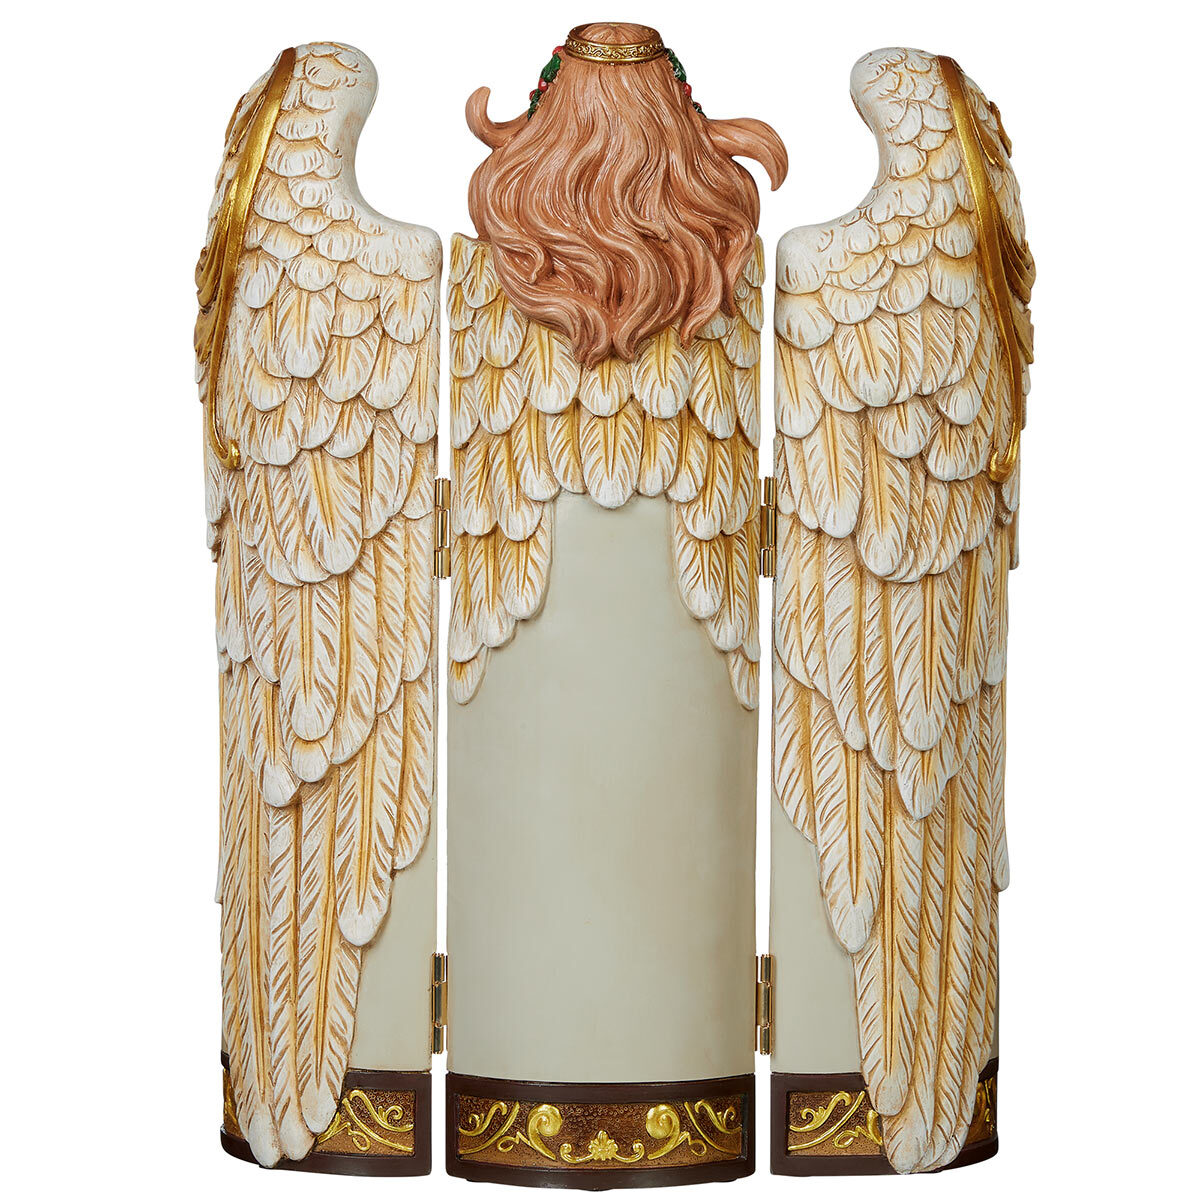 Buy Holy Family Folding Angel Back Image at Costco.co.uk